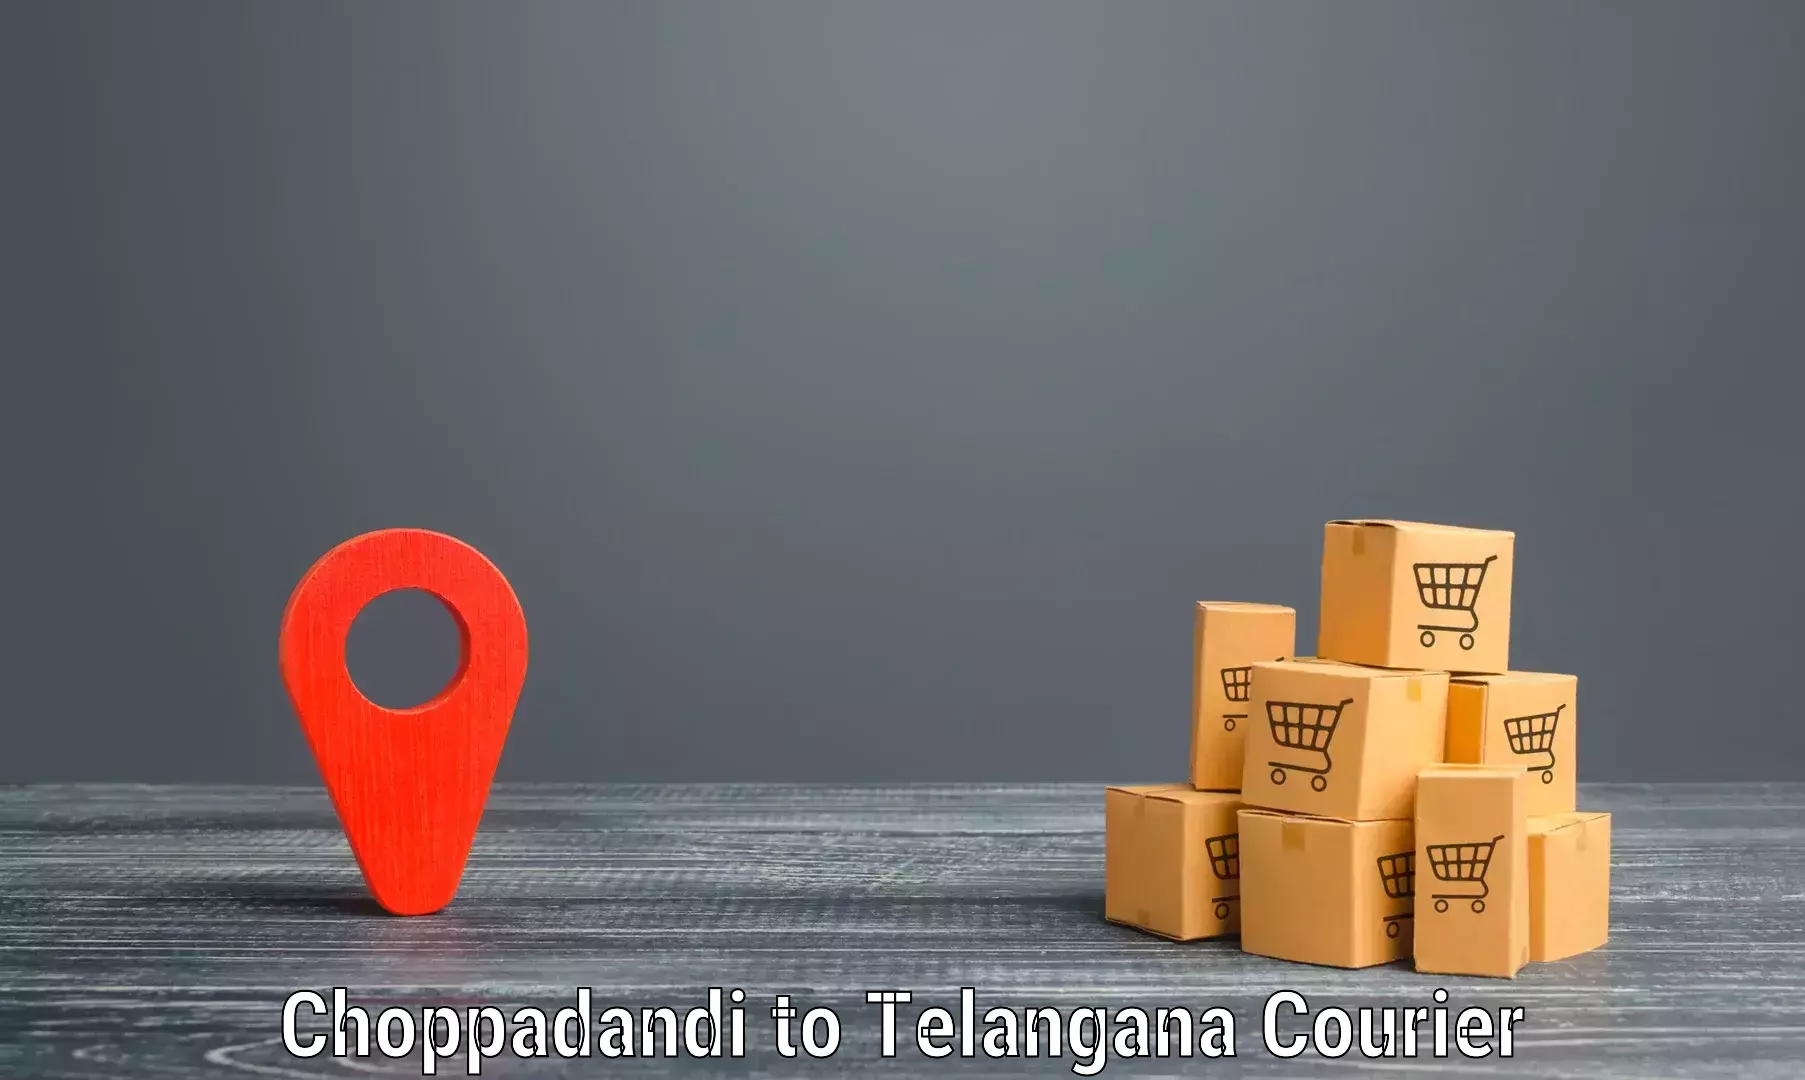 Customer-focused courier in Choppadandi to Dharmapuri Jagtial